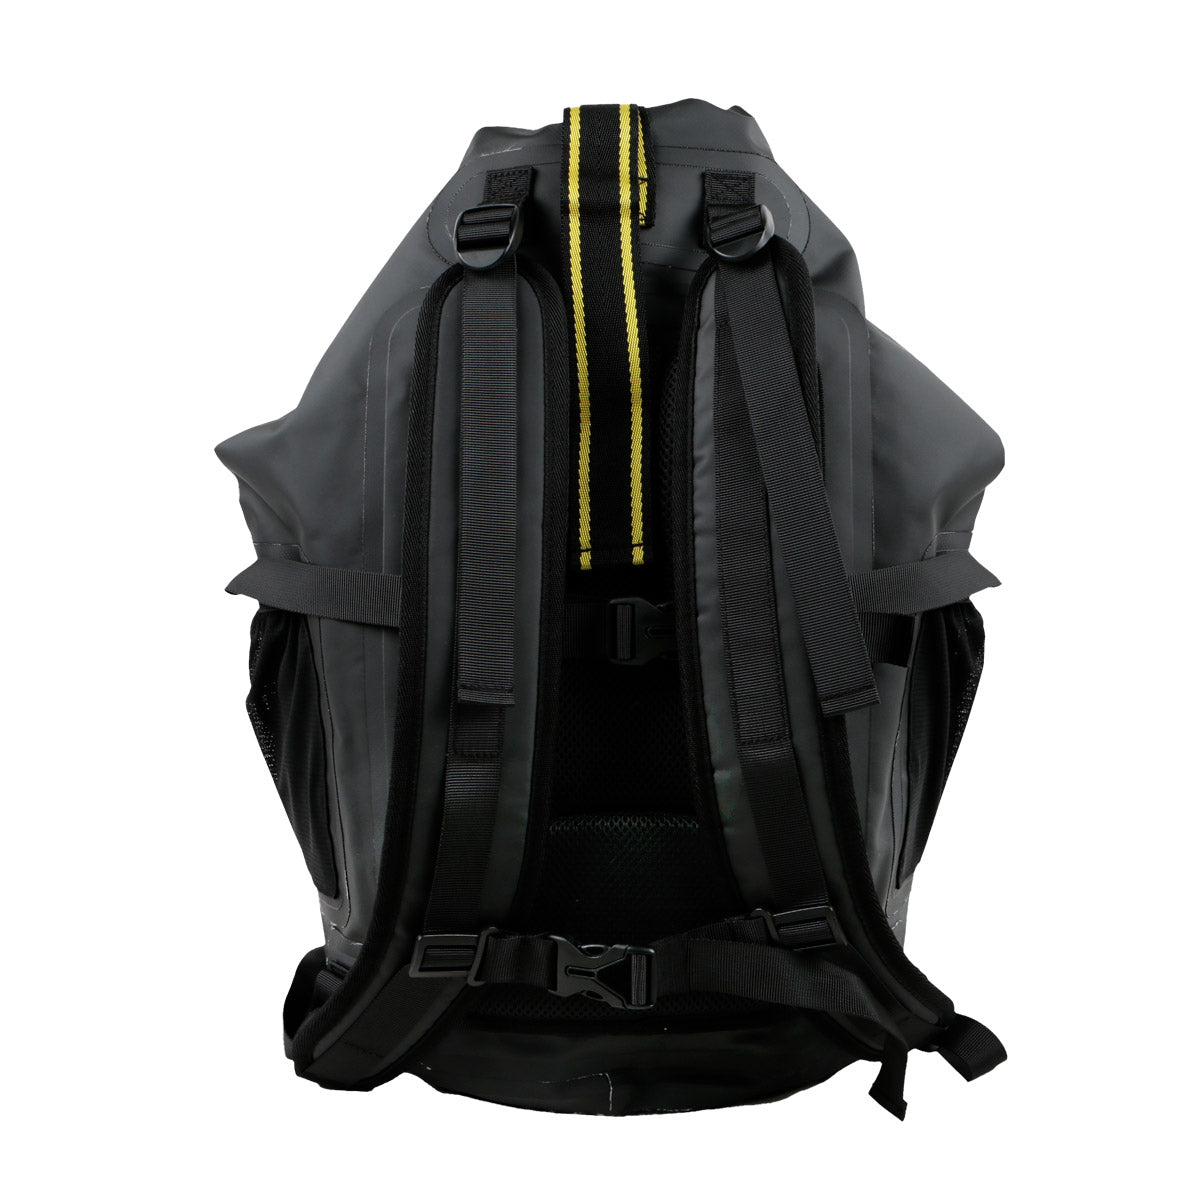 Sooruz - Waterproof Backpack